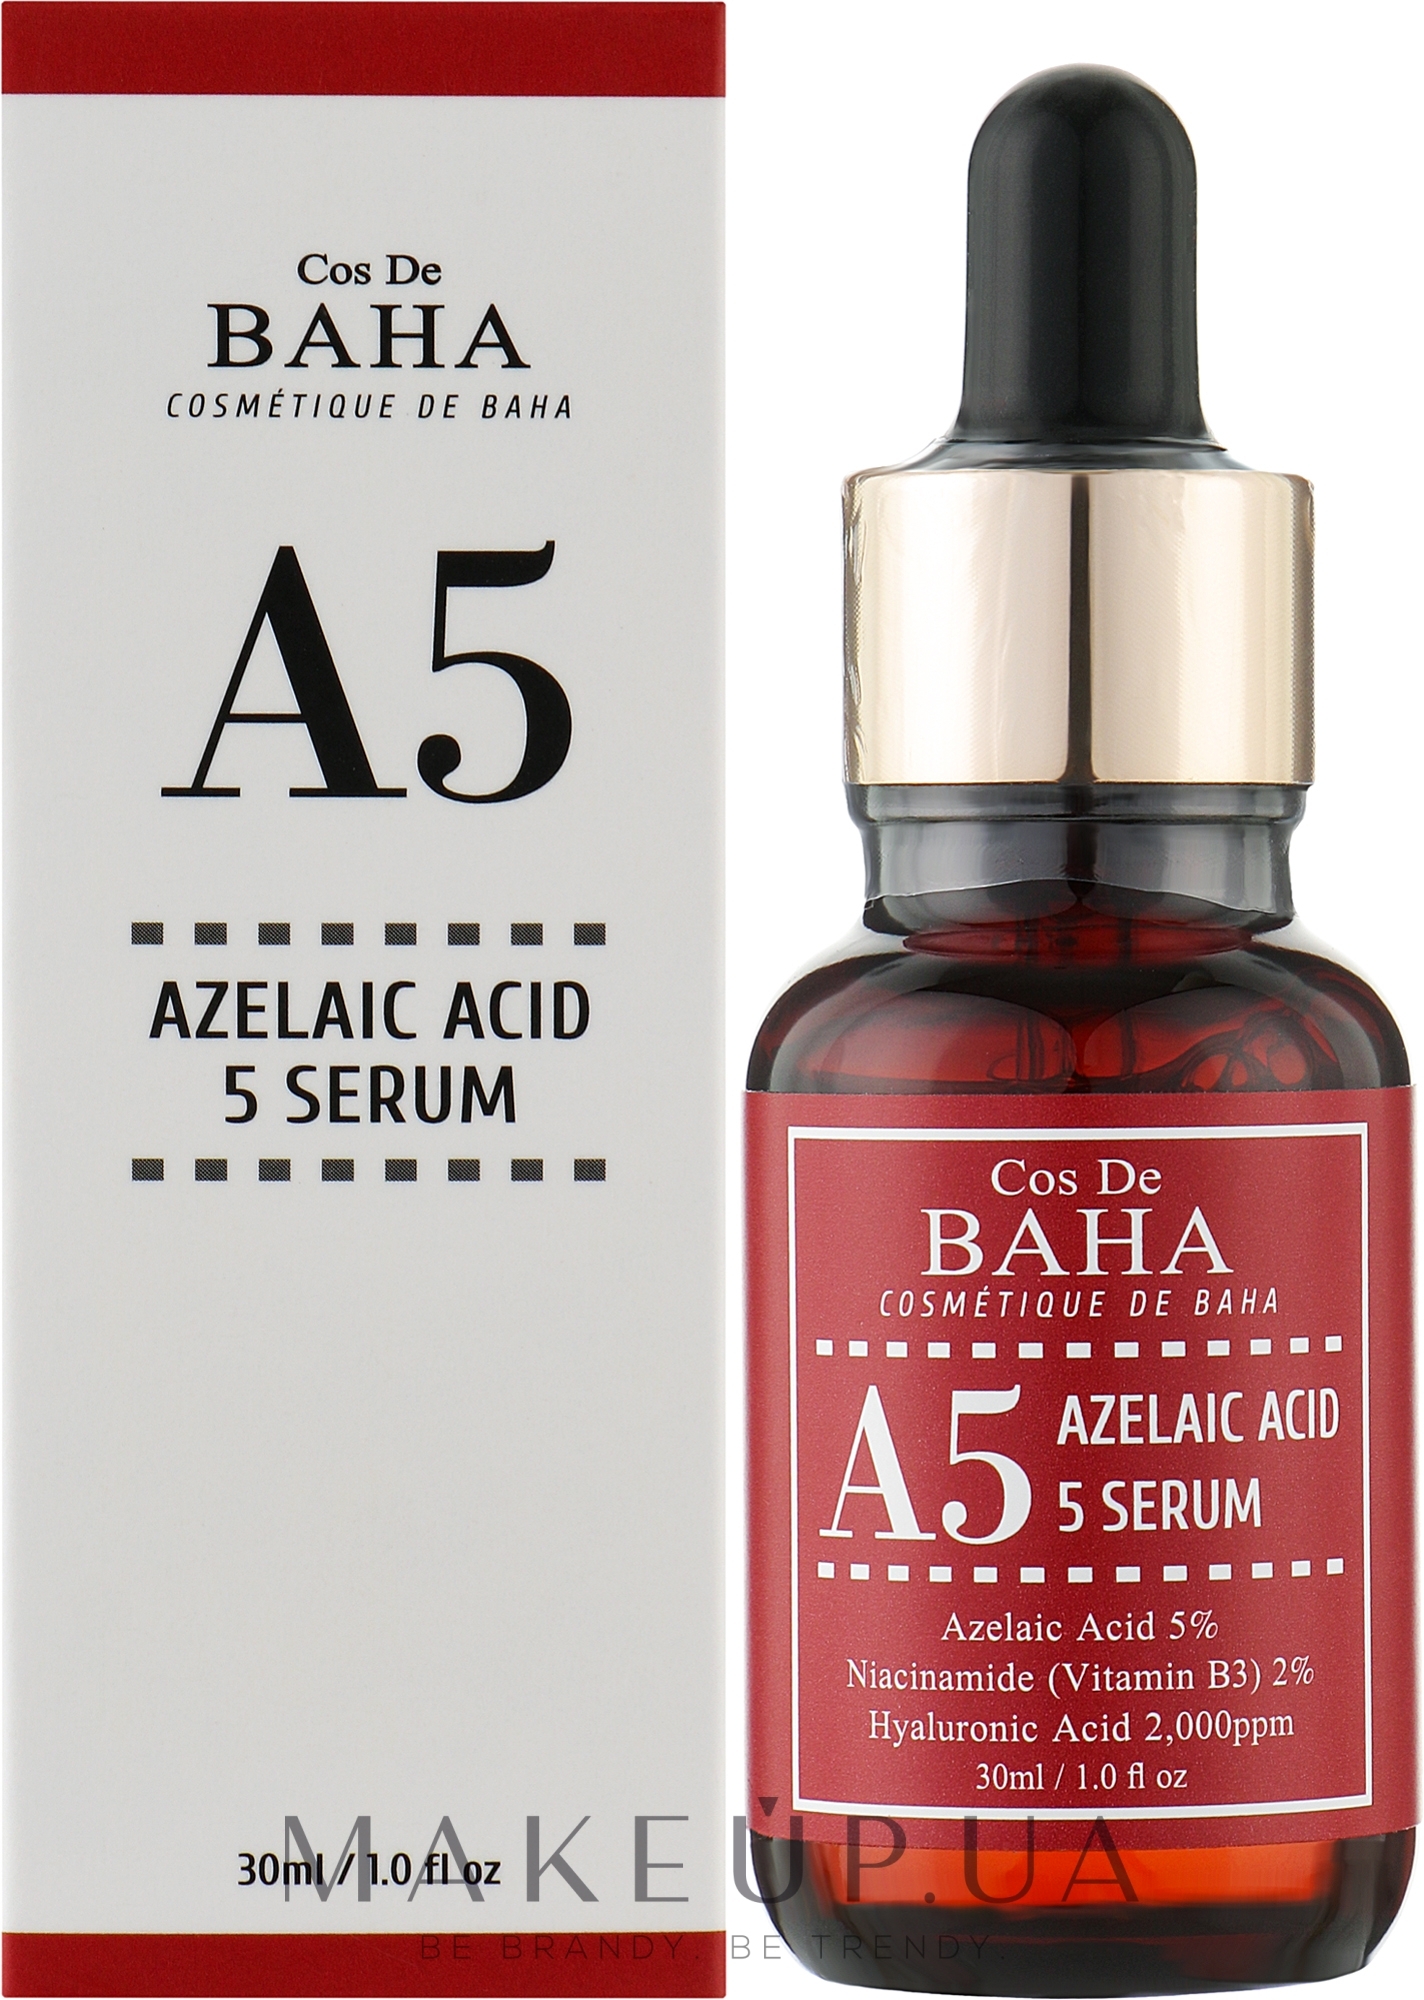 Сироватка для обличчя з азелаїновою кислотою 5% - Cos De Baha A5 Azlaic Acid 5% Serum — фото 30ml